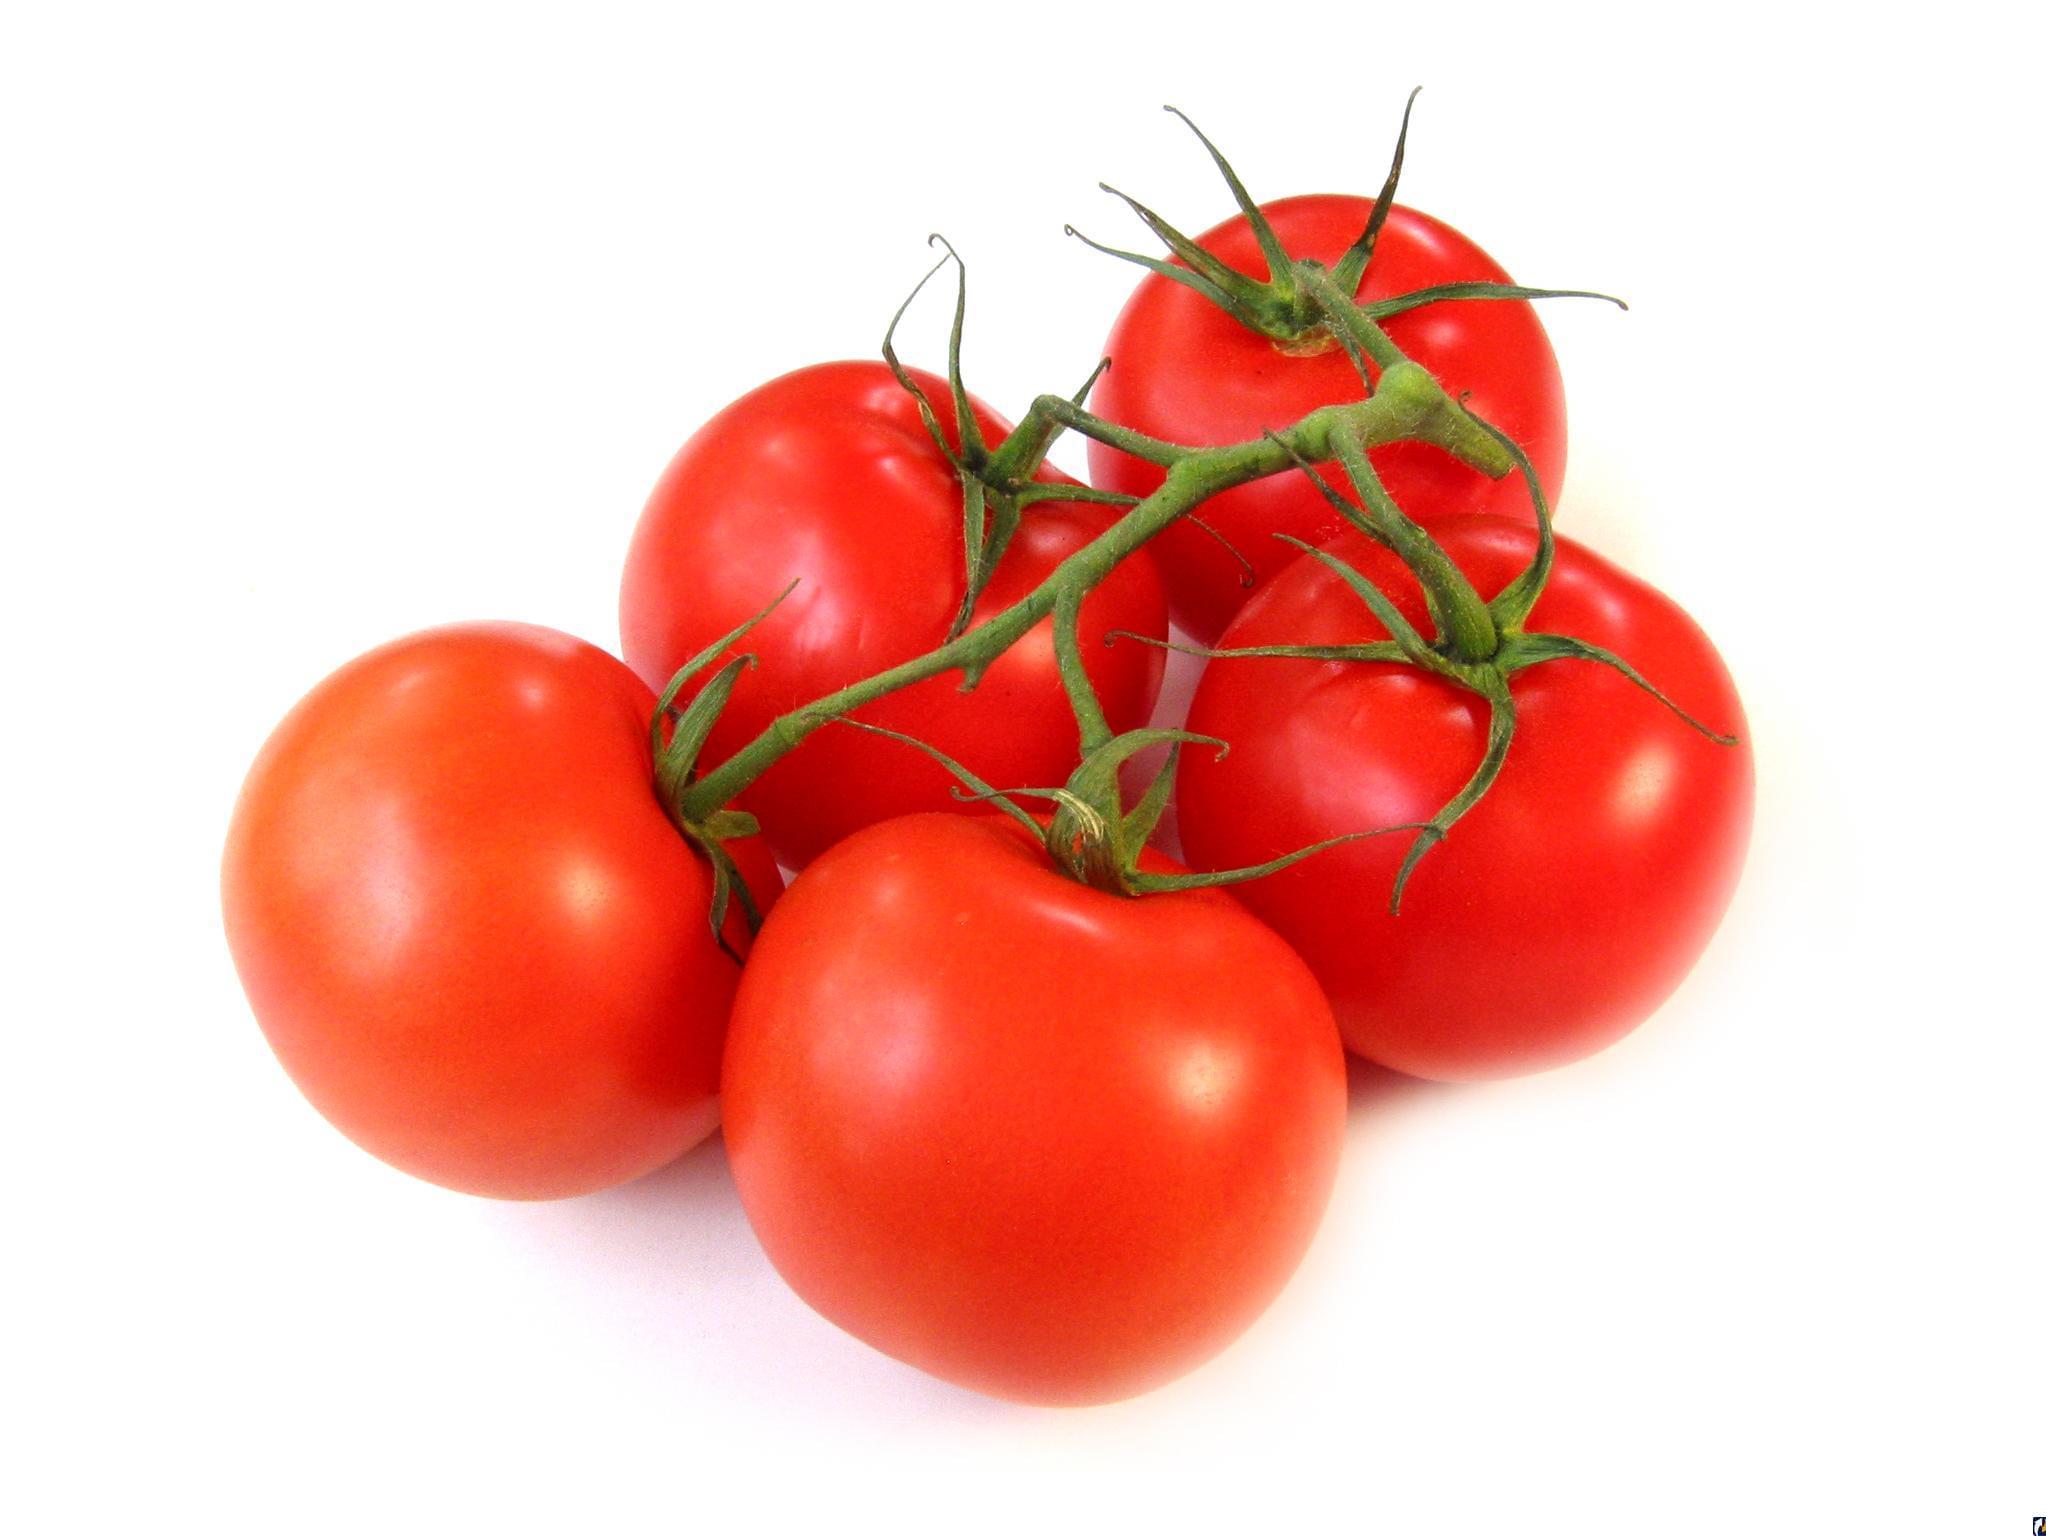 Кроме того, томаты содержат в себе важные пищевые волокна, которые помогают регулировать уровень сахара в крови и улучшают работу пищеварительной системы. Они также предоставляют организму энергию и помогают контролировать вес.